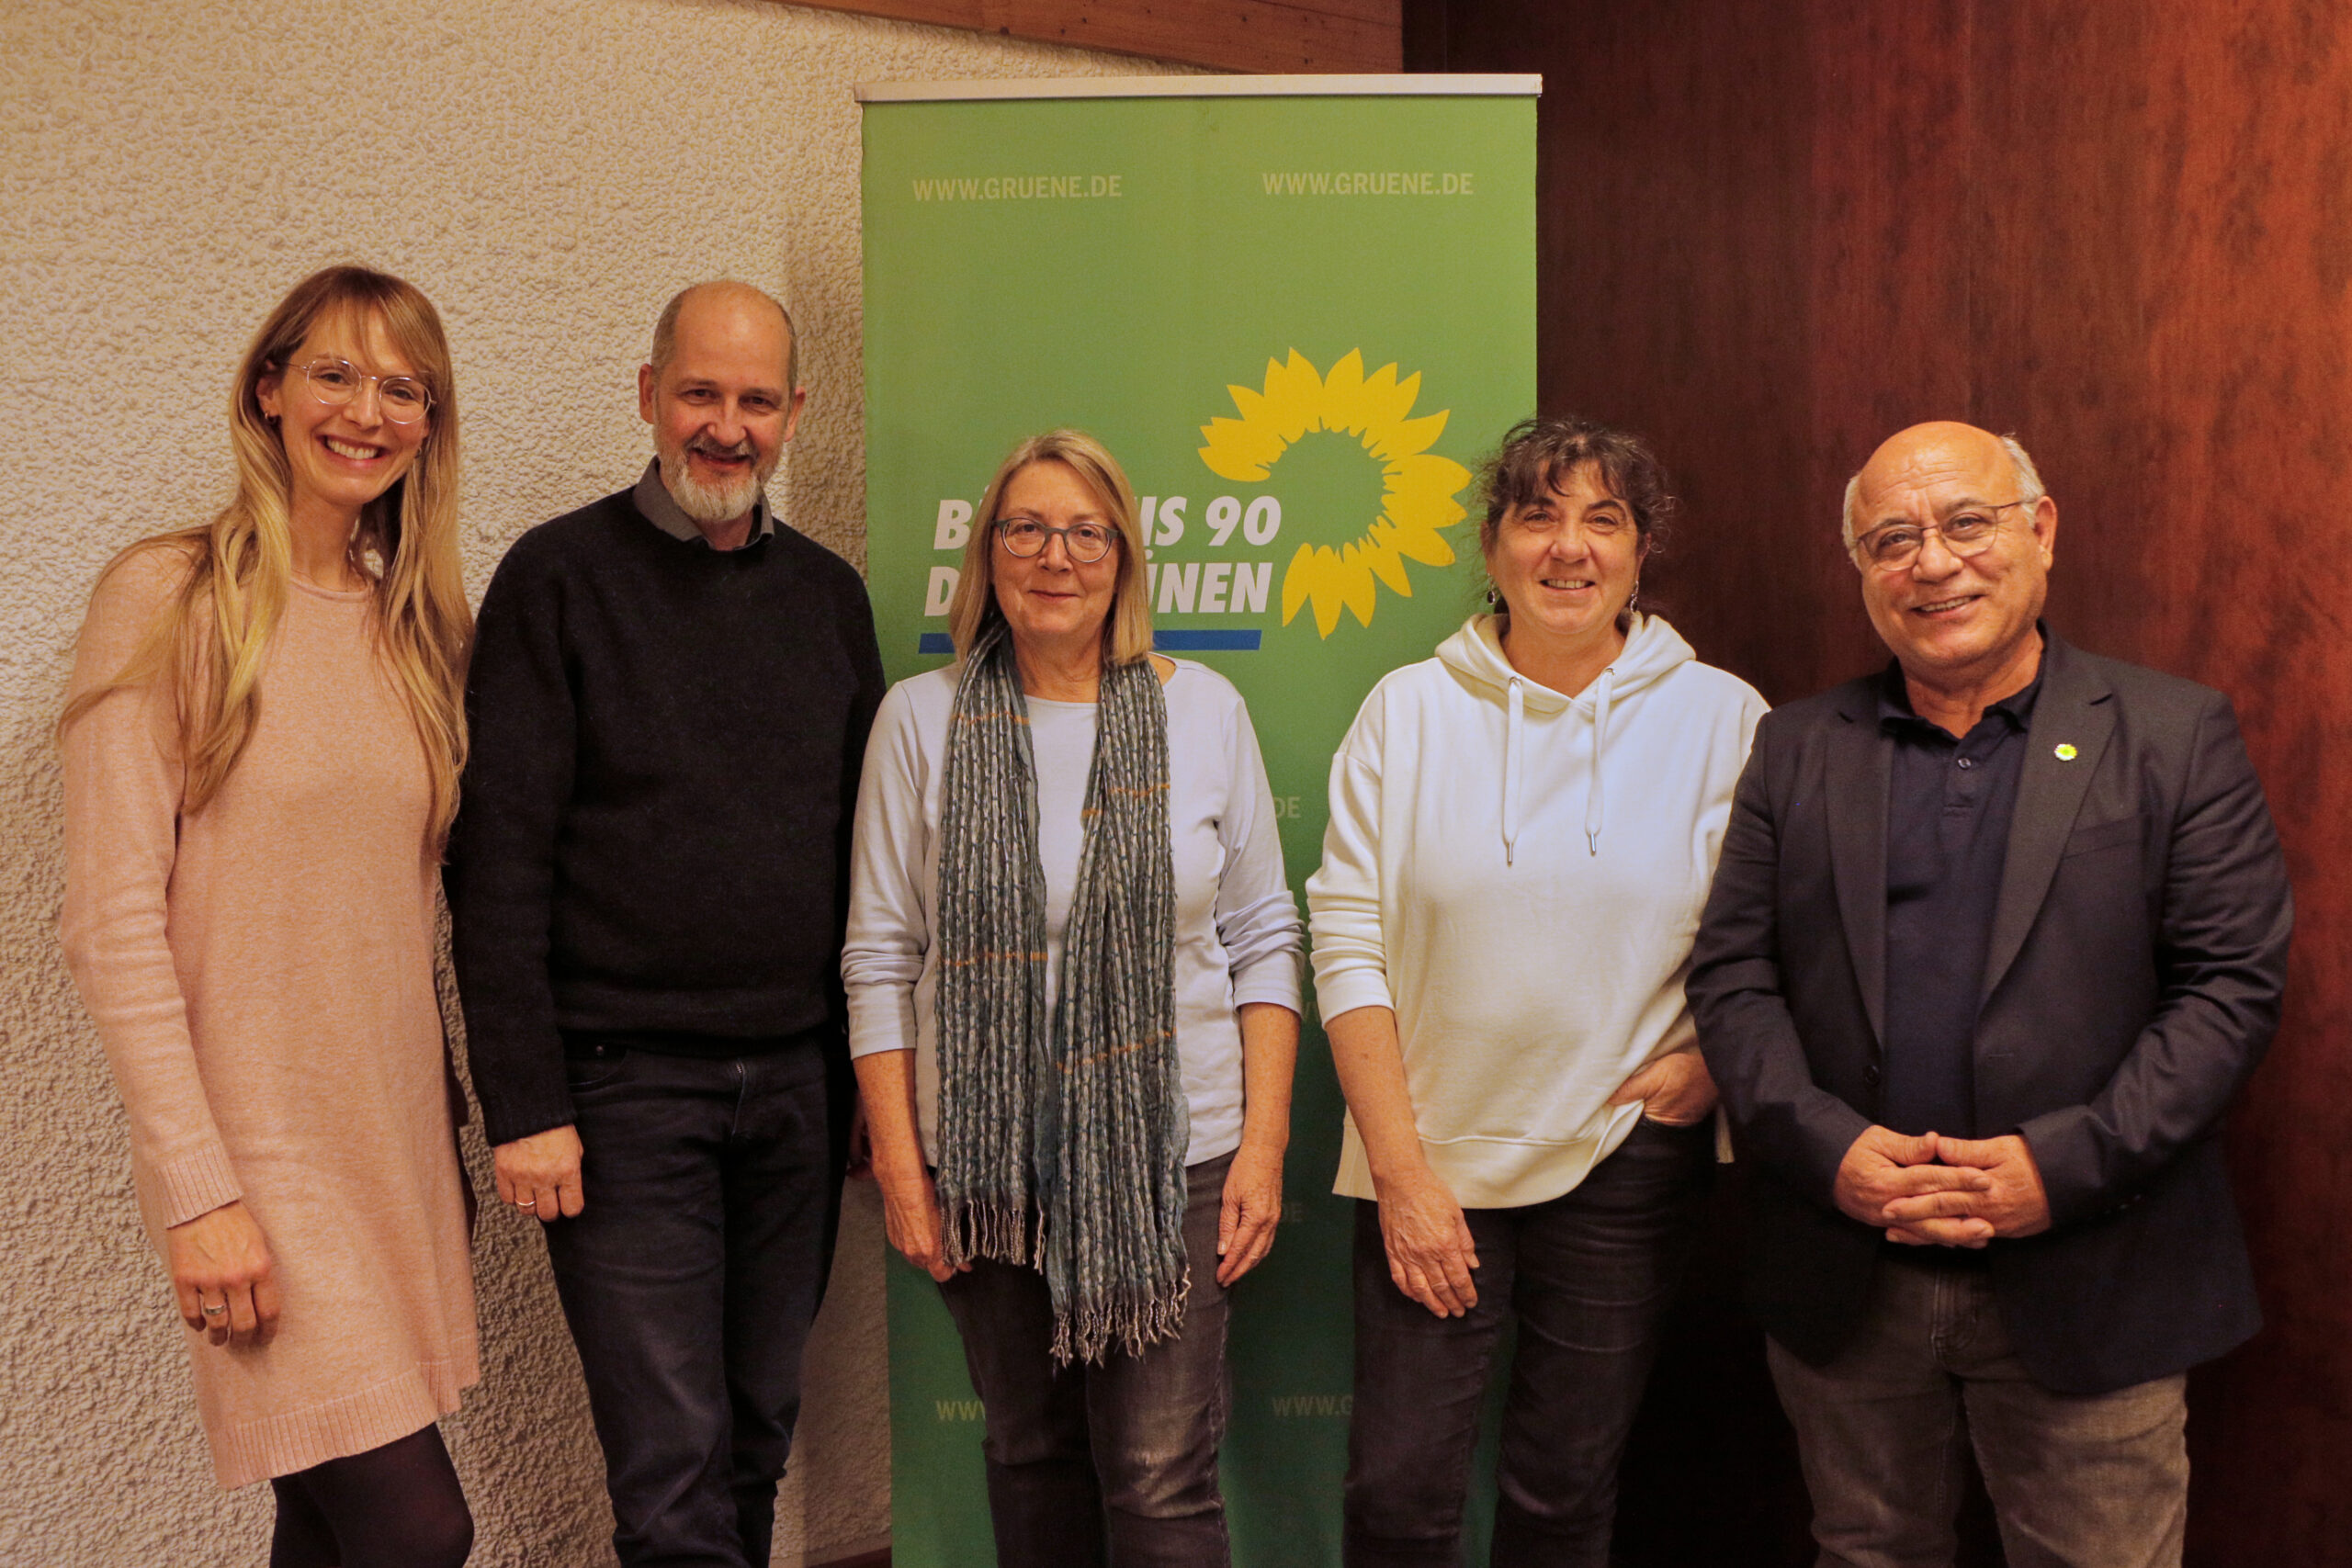 Bild des neu gewählten Vorstandesteams der grünen Neusäß vor RollUp mit Grünem Logo